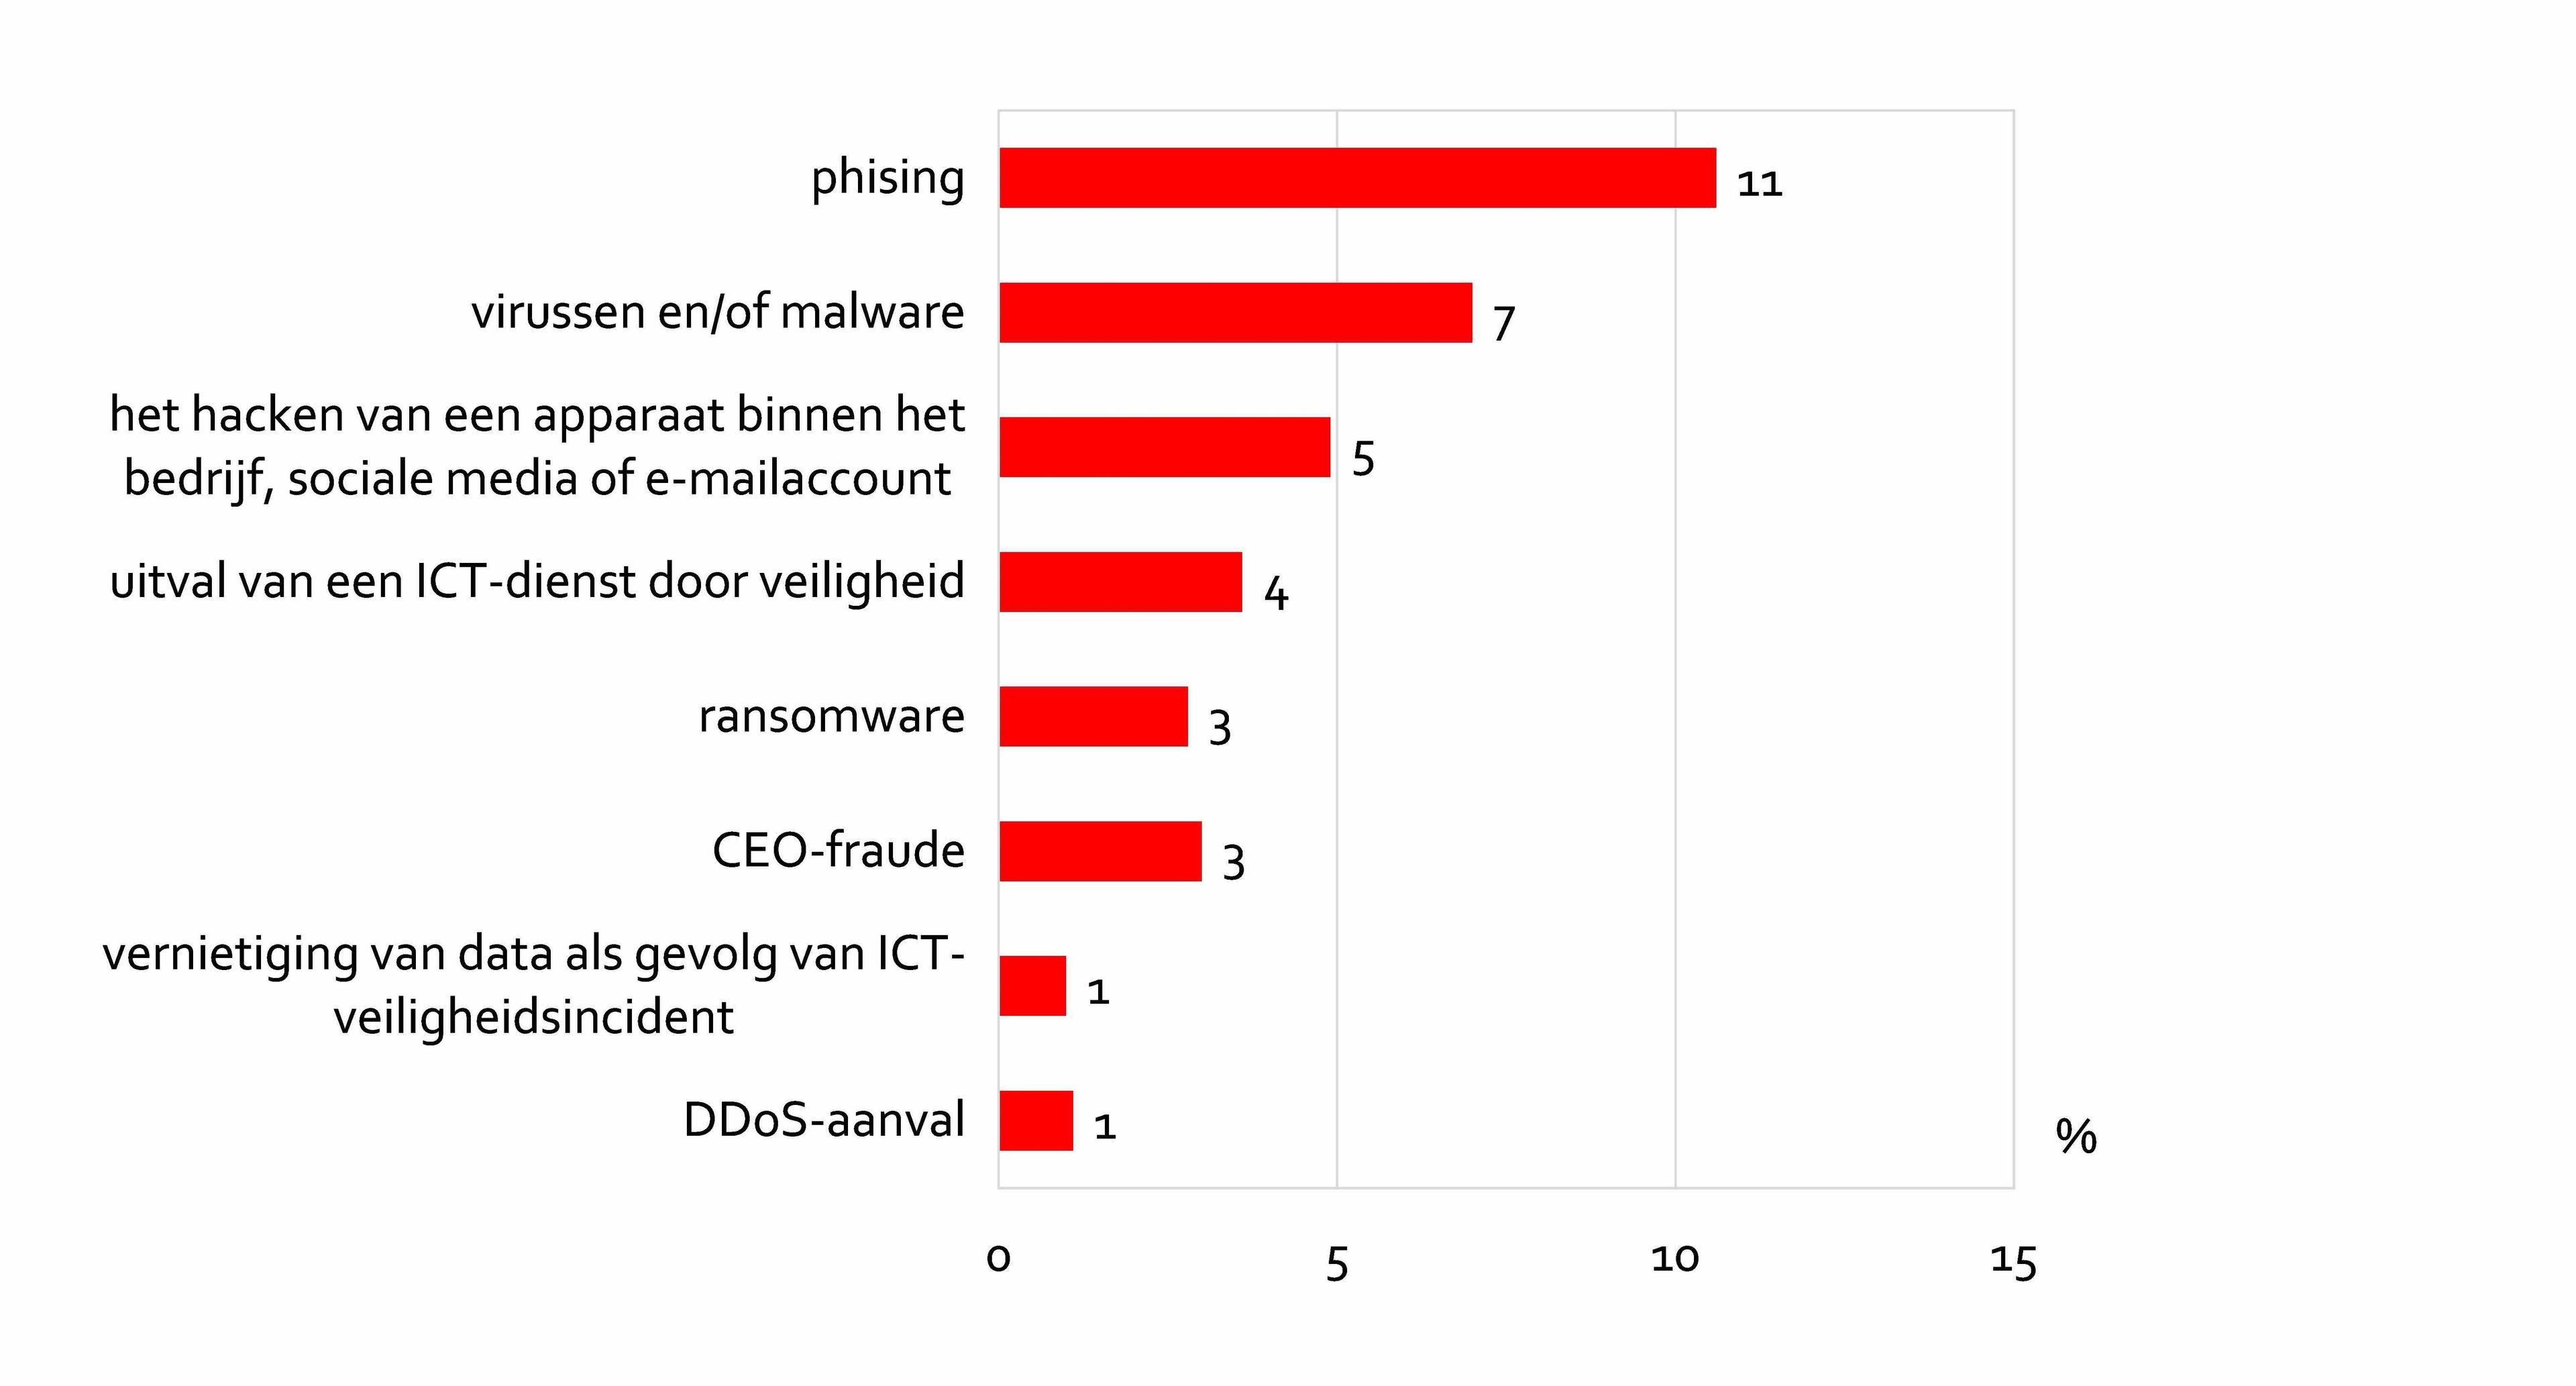 Aandeel van de bedrijven dat te maken kreeg met diverse vormen van cybercrime in de afgelopen vijf jaar (n=91, %). 11% kreeg te maken met phising, 7% met virussen en of malware, 5% met hacken.